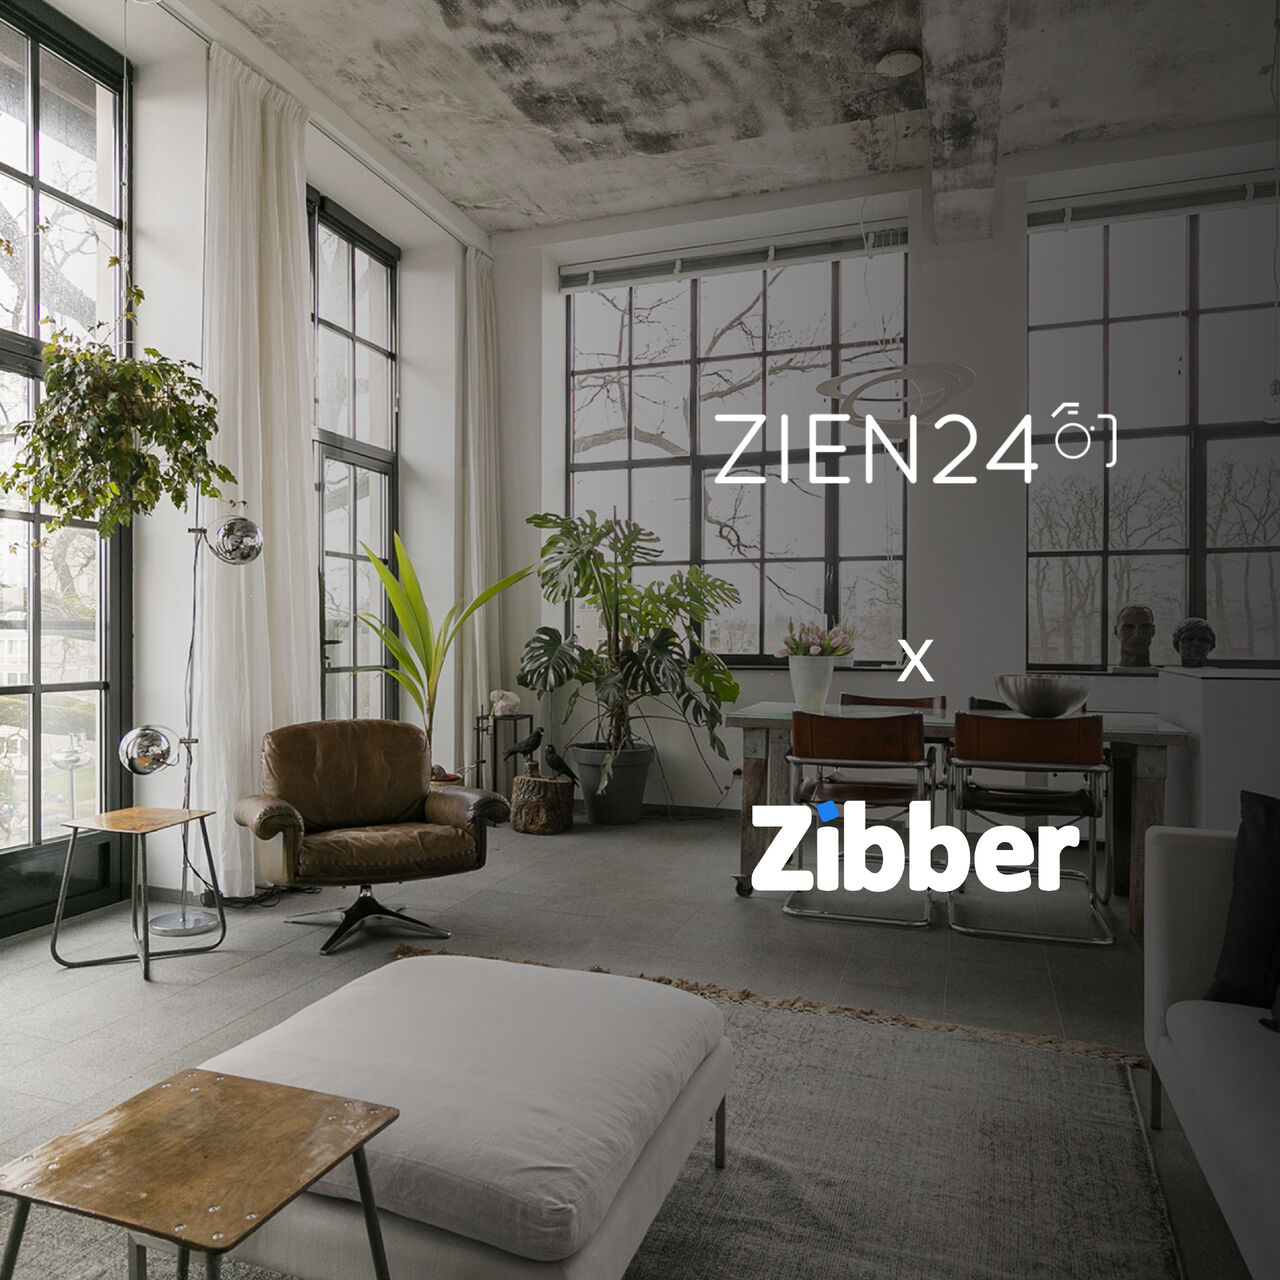 Zien24 x Zibber